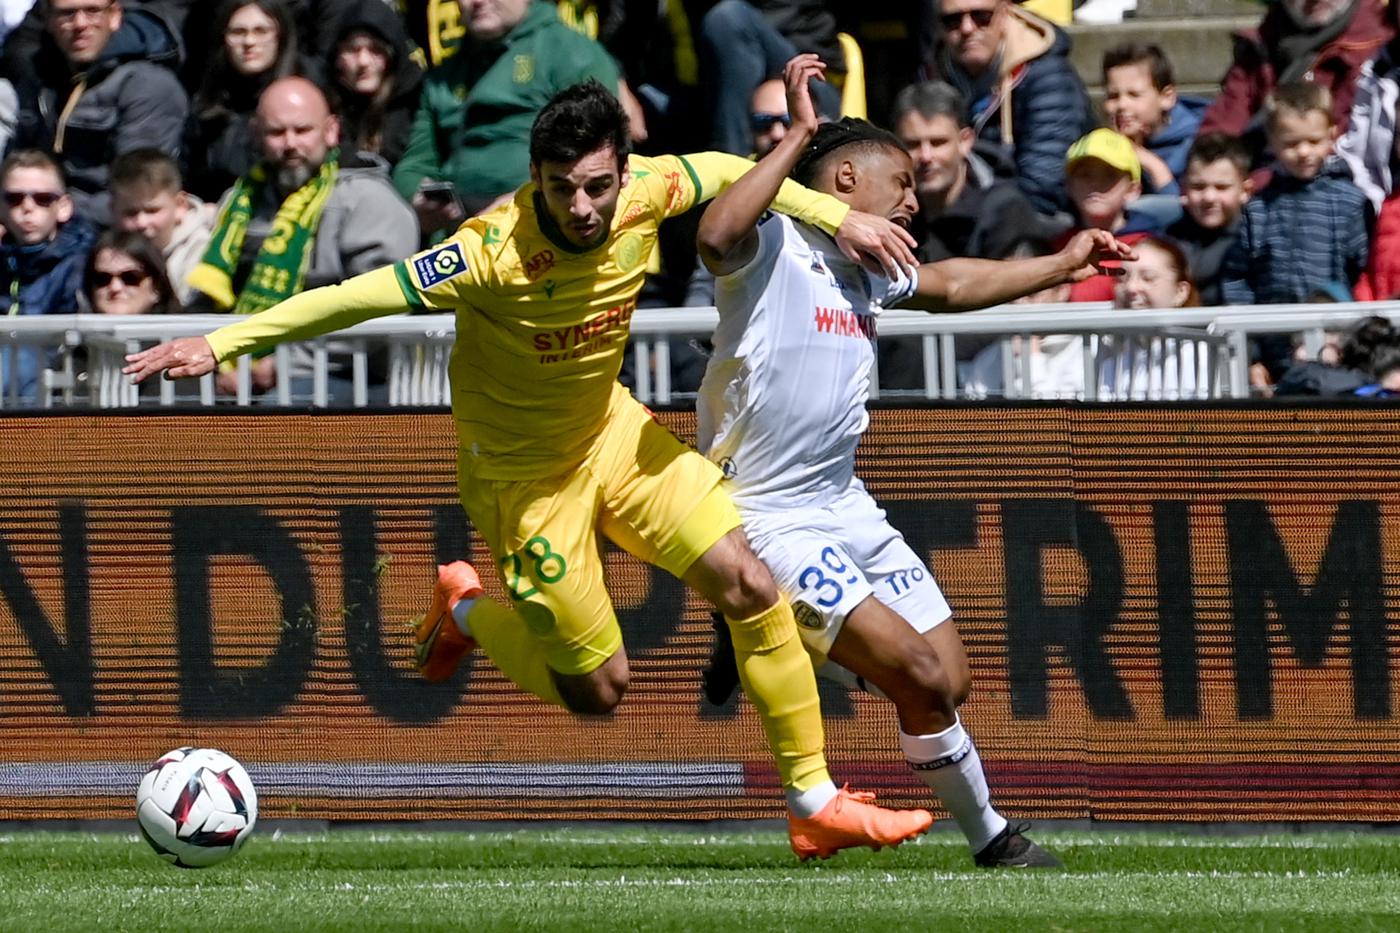 Nantes - Troyes - 2:2. Französische Meisterschaft, Achtelfinale 32. Spielbericht, Statistik.